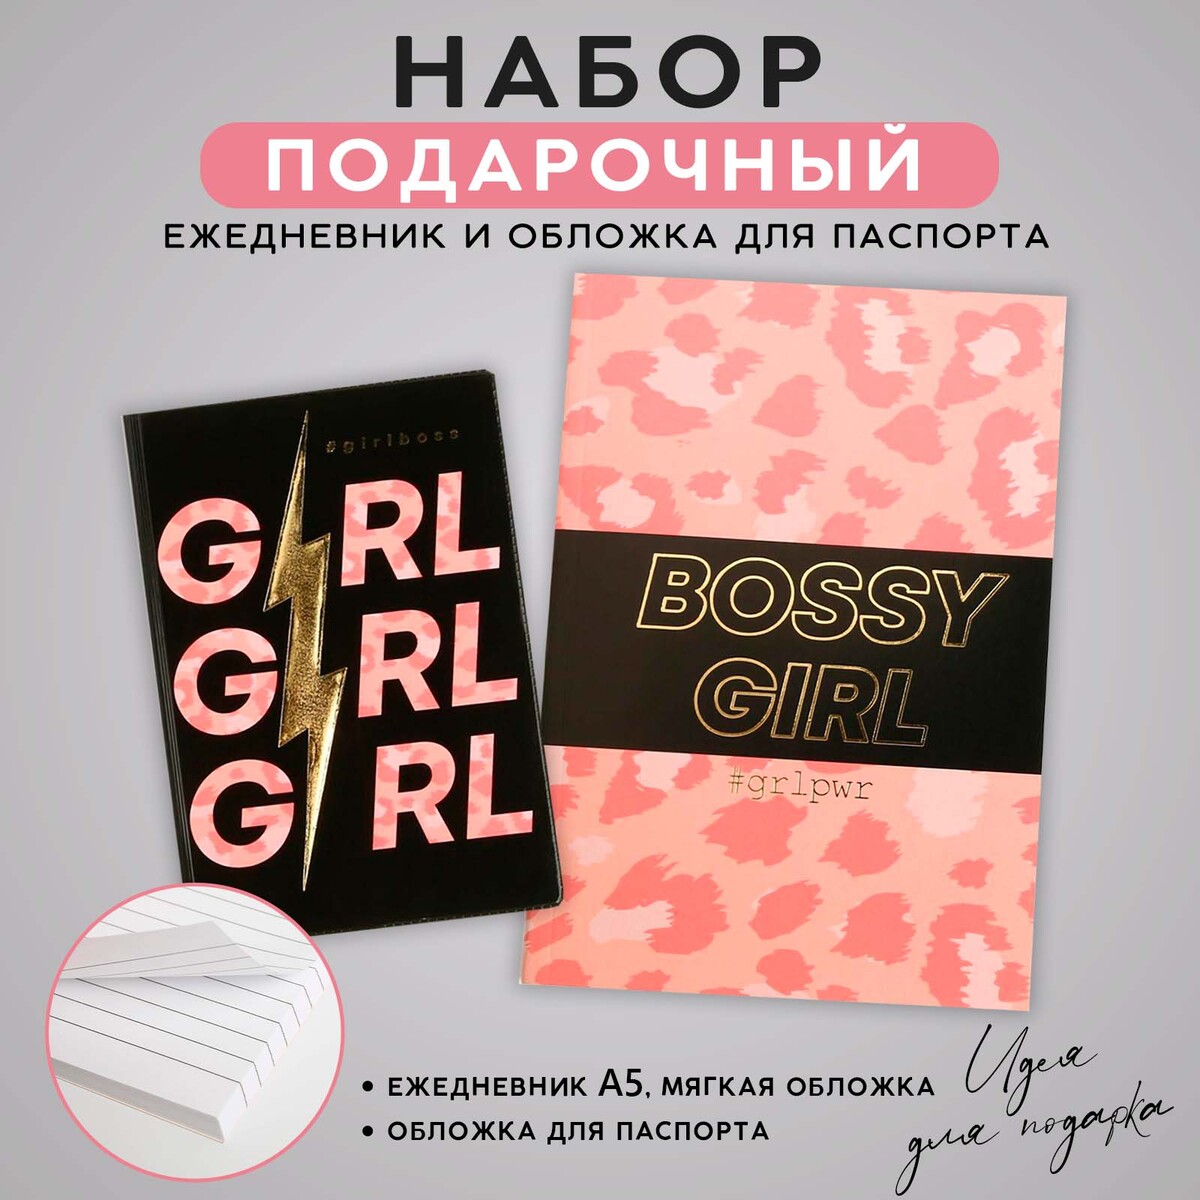 Набор обложка для паспорта и ежедневник #girl school girl скатка для бровей с бамбуковой пудрой 15г